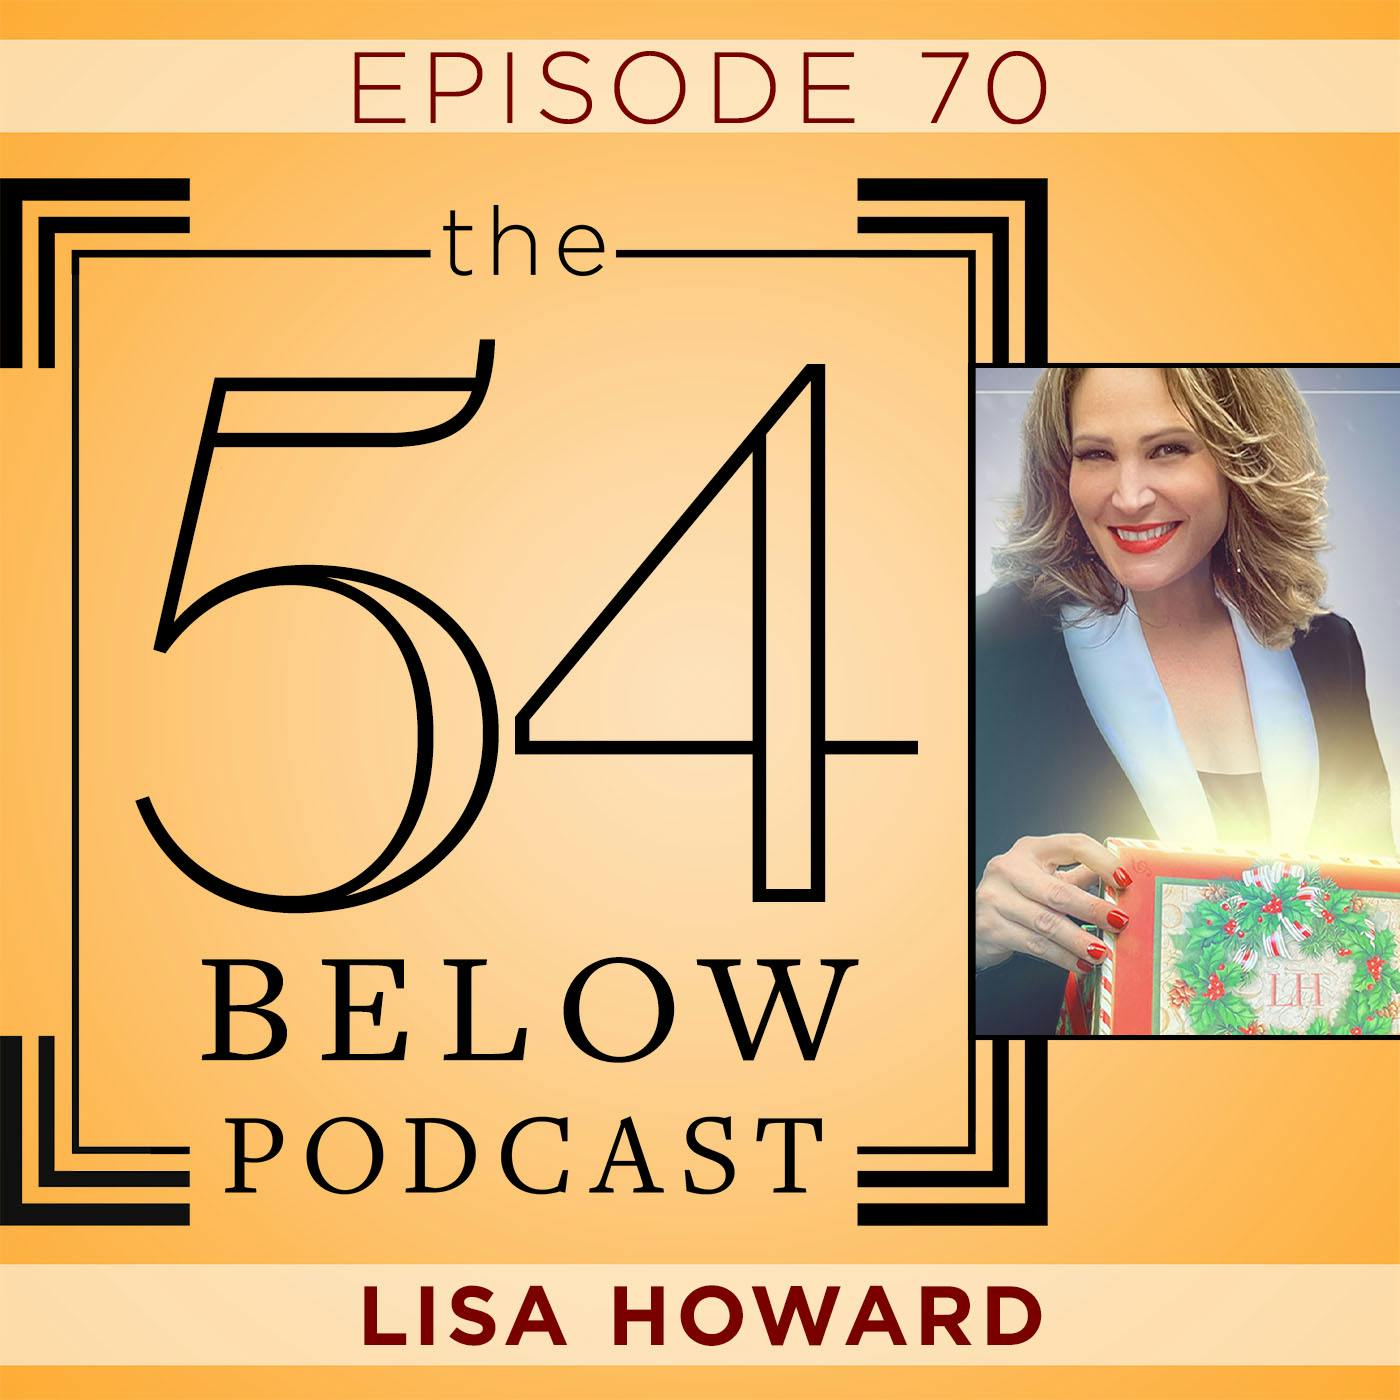 Episode 70: LISA HOWARD